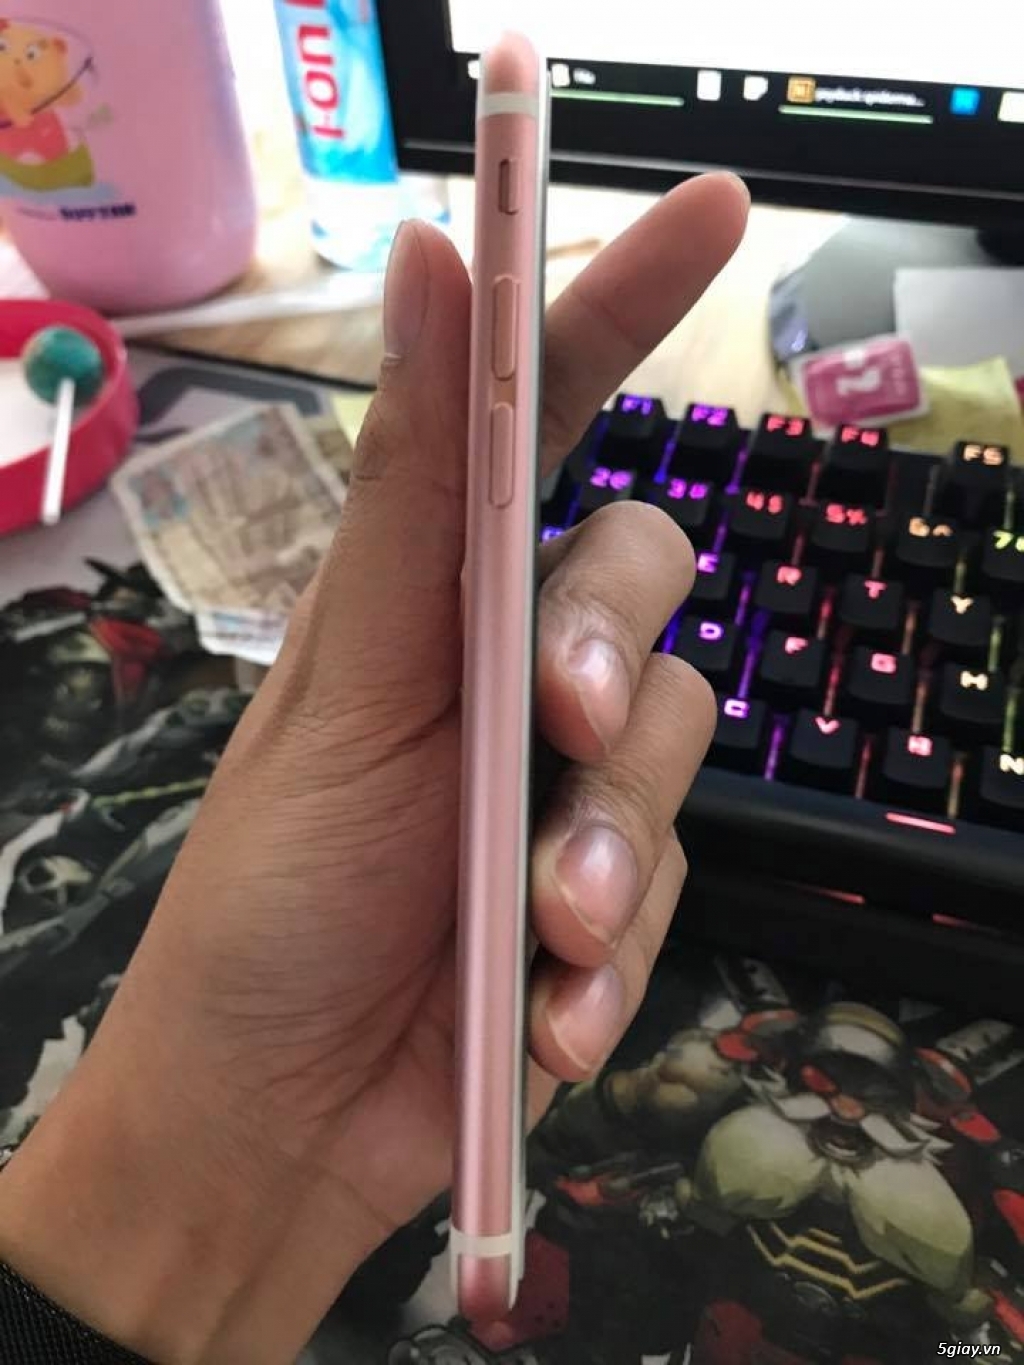 iphone 6s Rose Gold 16gb máy zin all chưa vêt trầy - 4